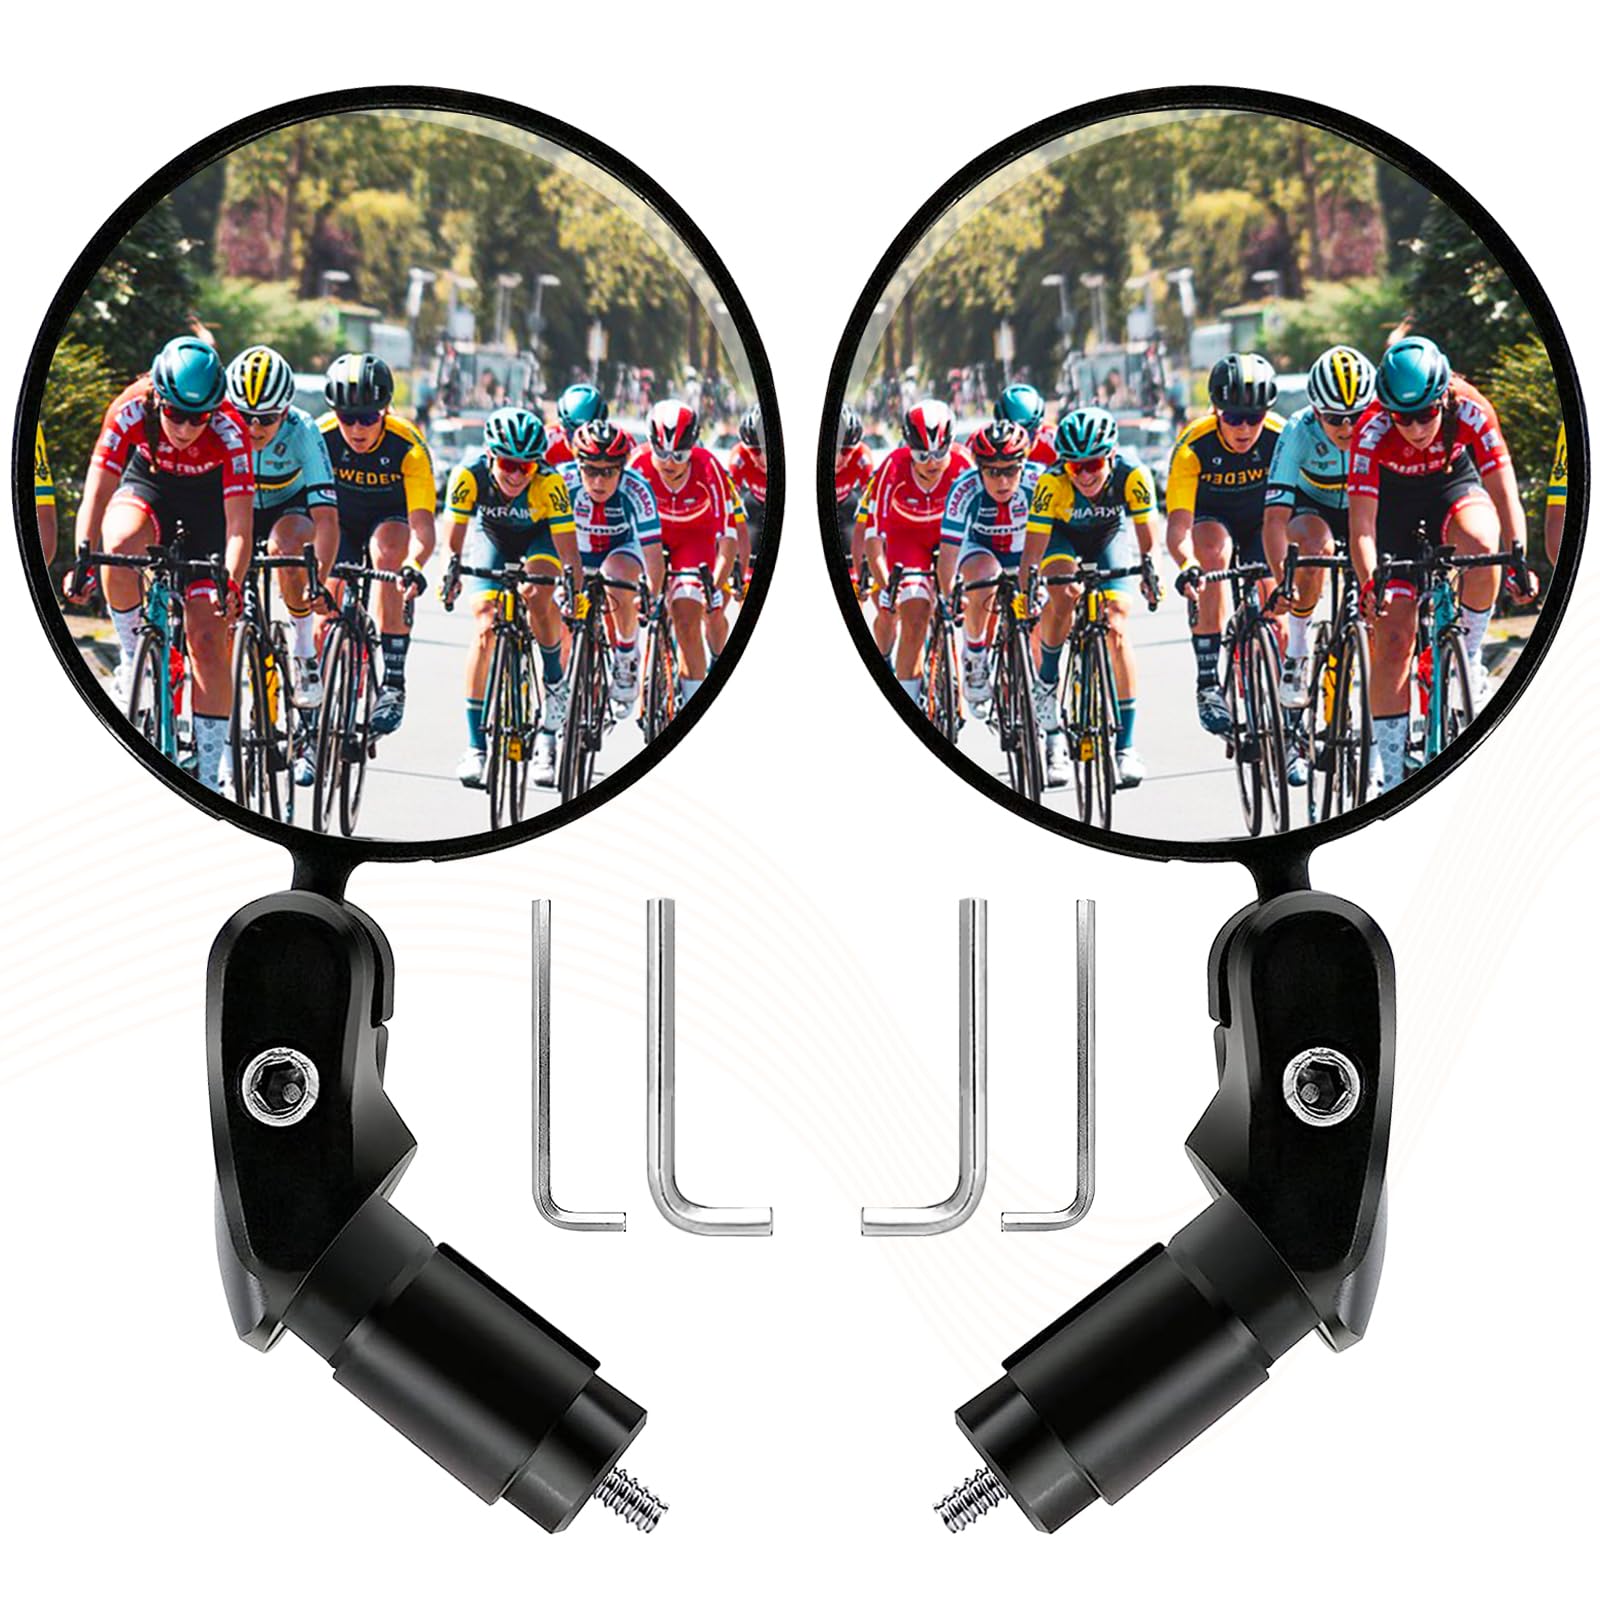 Fahrradspiegel für Fahrrad Lenker 17.4-22 mm, Klappbar 360°Drehbar Rückspiegel Fahrrad Universal Weitwinkel Fahrrad Spielgel für Ebike, Fahrrad, Mountainbike, Rennräder (2 Stück) von Aotoyou